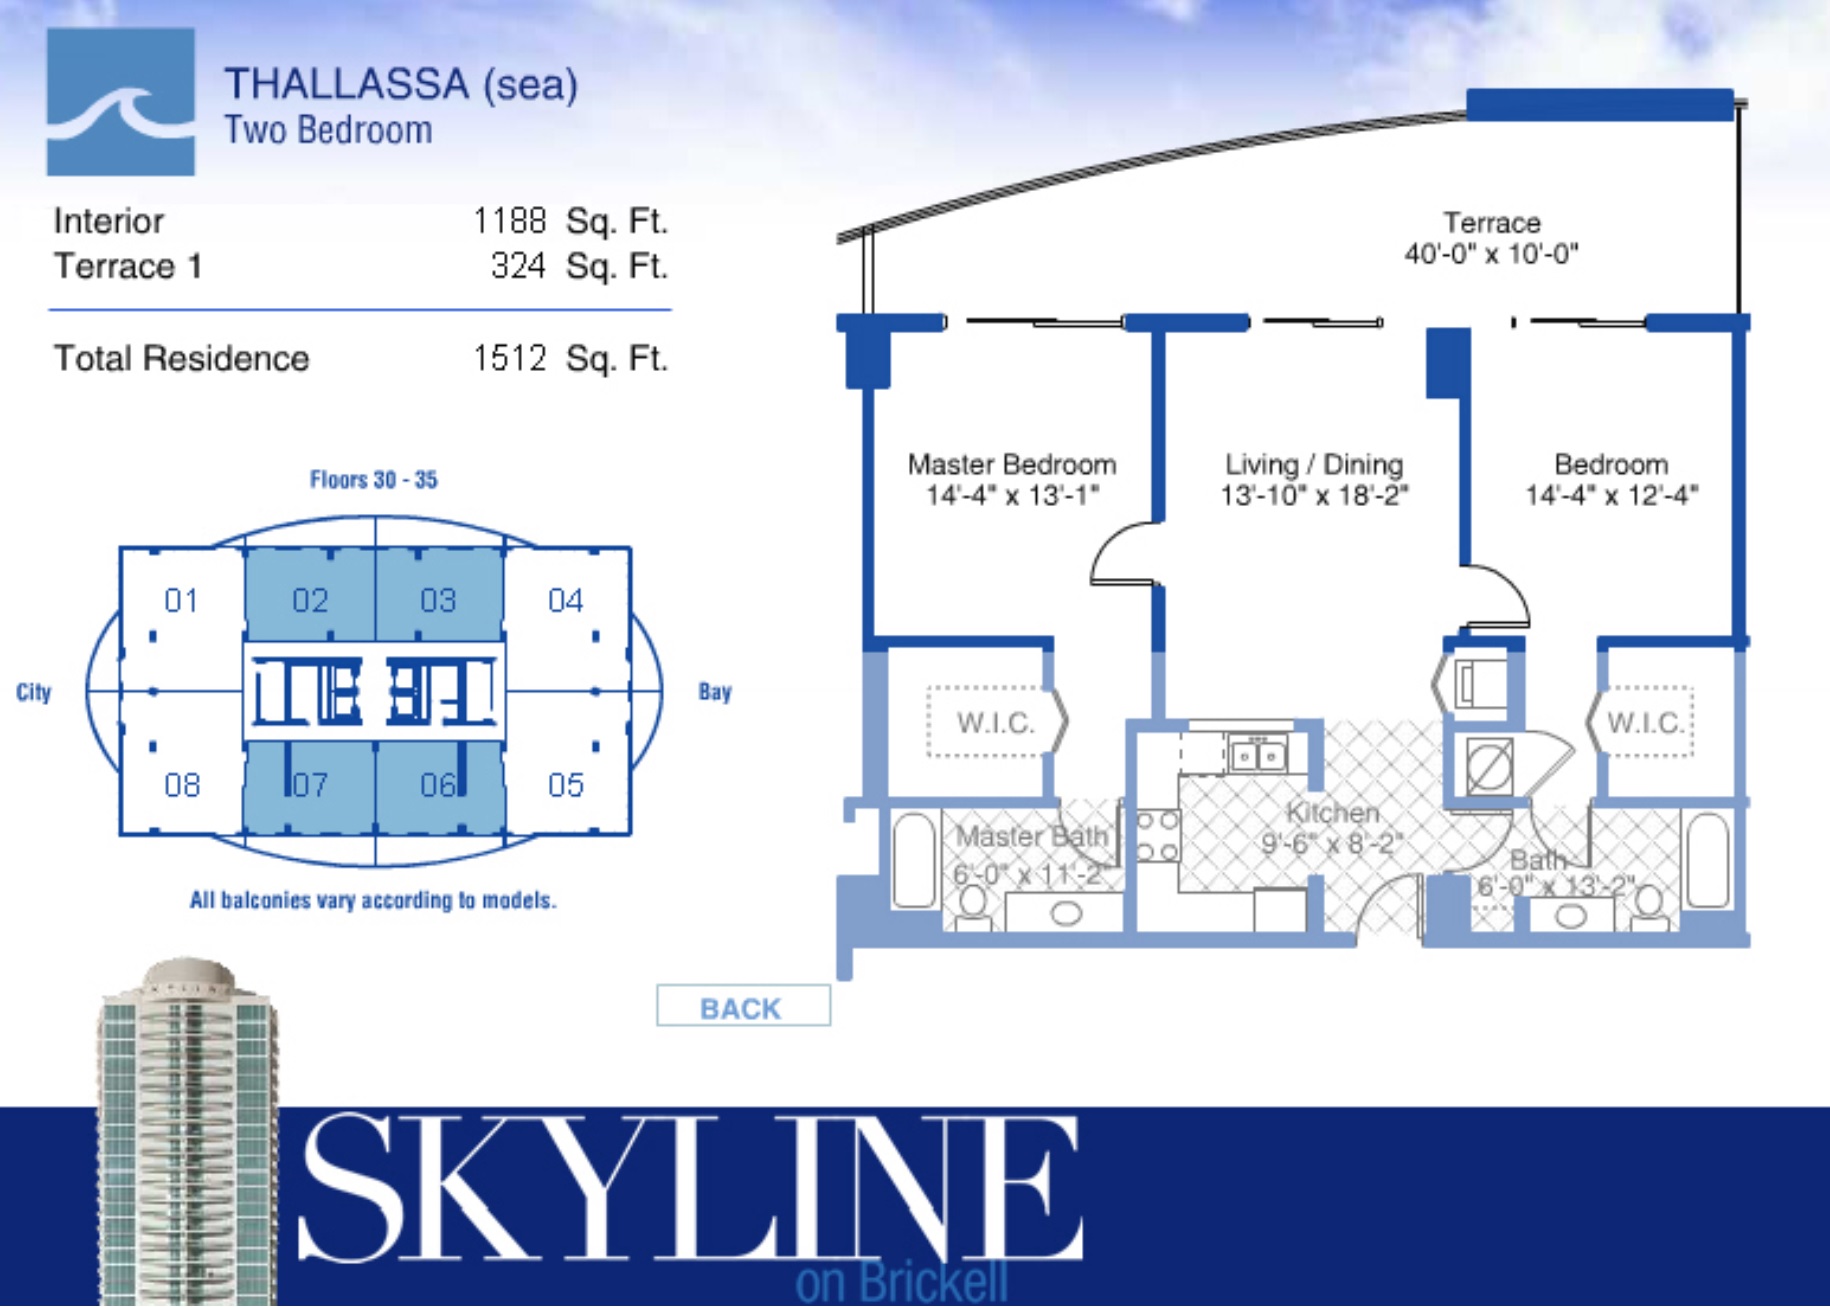 Skyline Brickell Thallasa